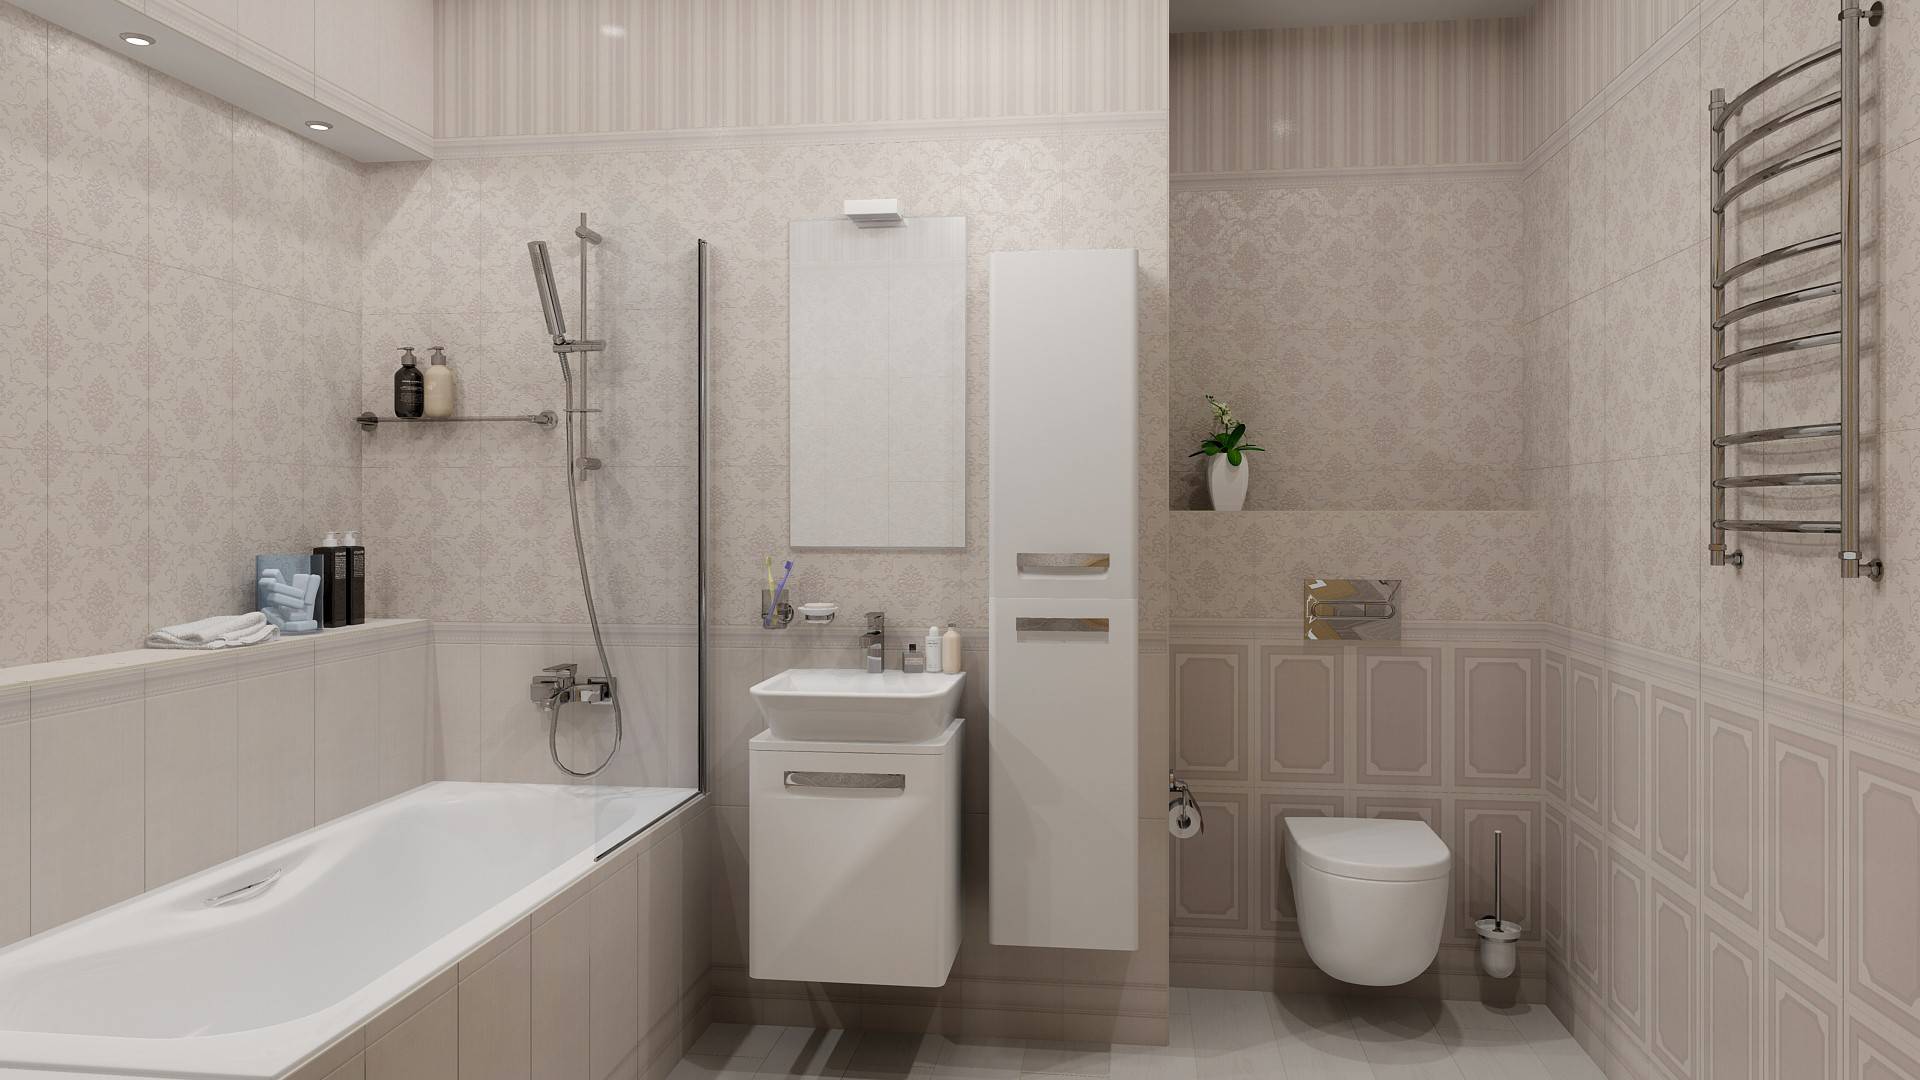 Какую плитку выбрать для ванной комнаты - цвет, размер +фото